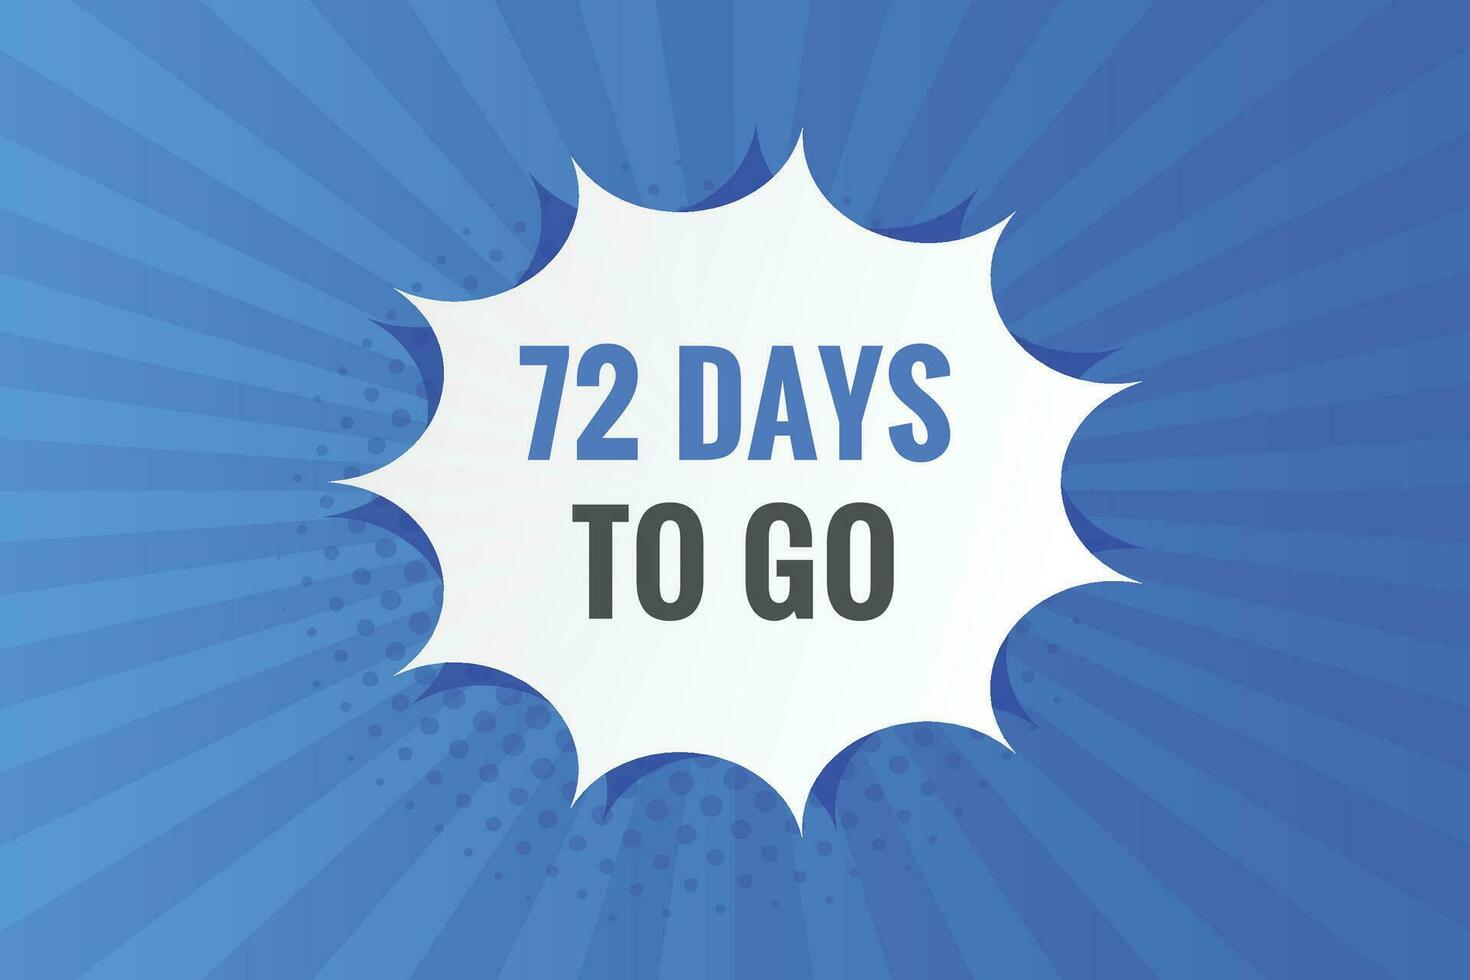 72 Tage zu gehen Countdown Vorlage. 72 Tag Countdown links Tage Banner Design vektor